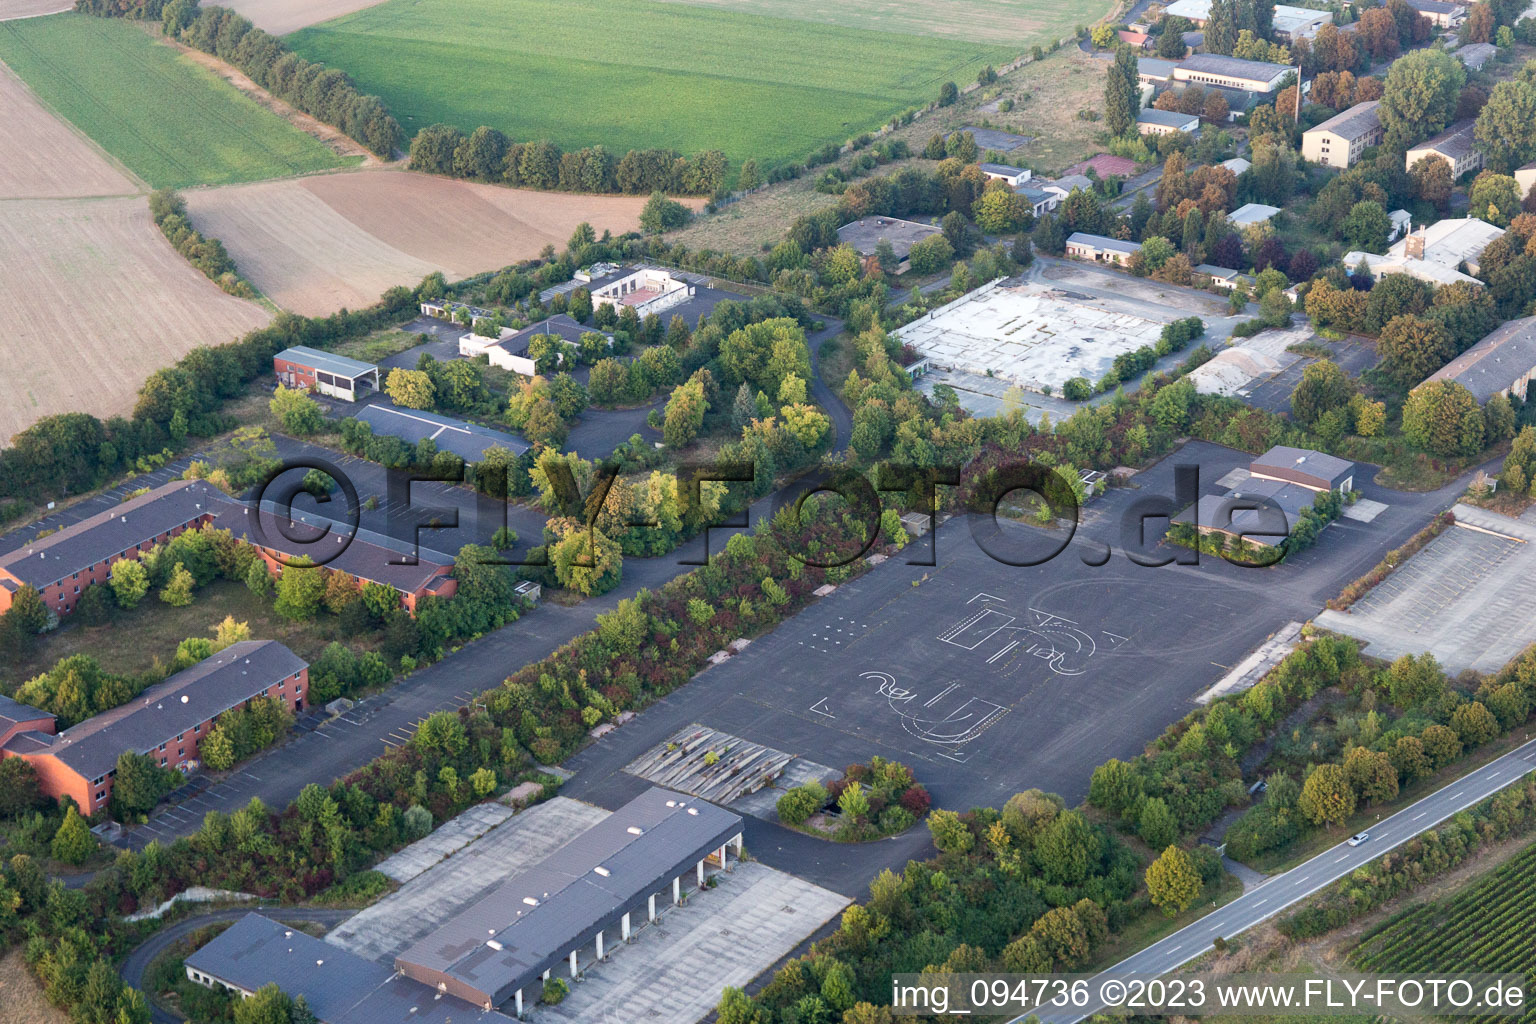 Vue aérienne de Parc Rhin-Selz à Nierstein dans le département Rhénanie-Palatinat, Allemagne